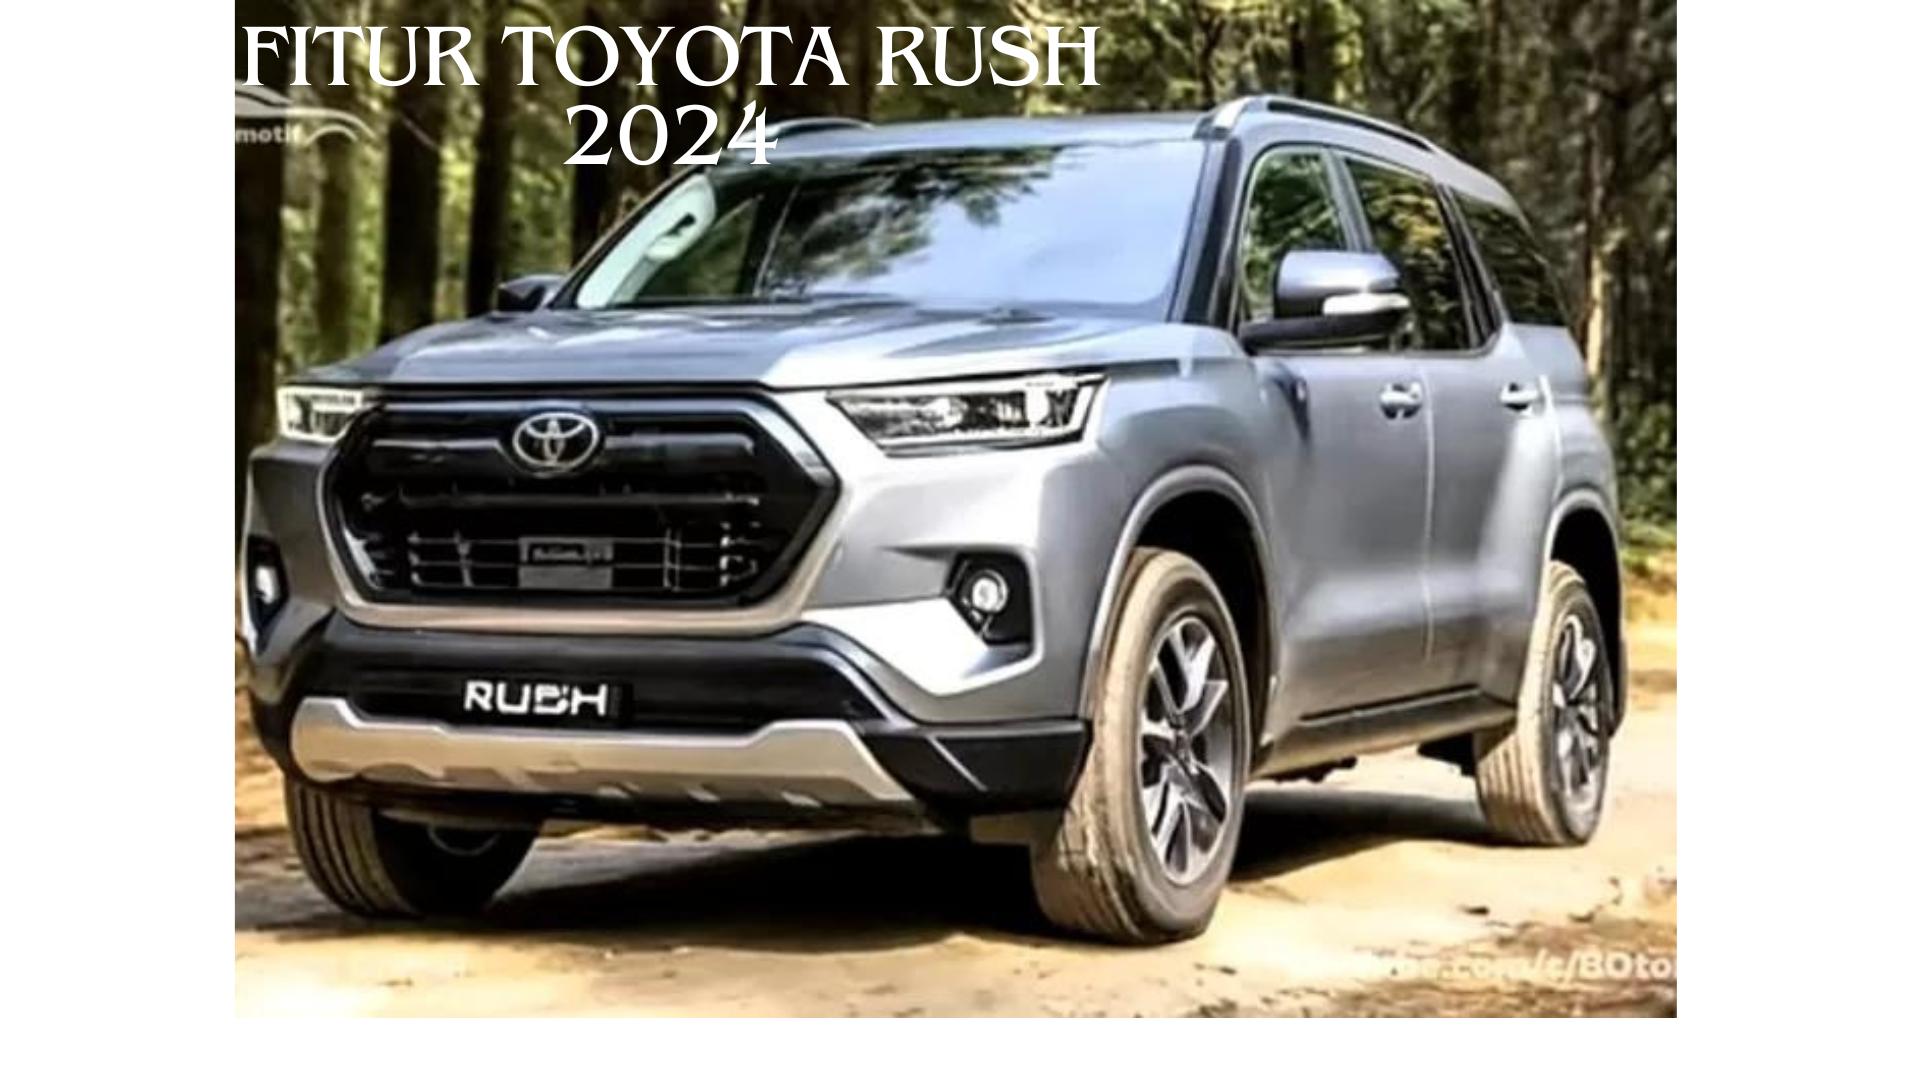 Fitur Toyota Rush 2024, SUV Bertenaga dengan Tampilan Futuristik yang Menggoda